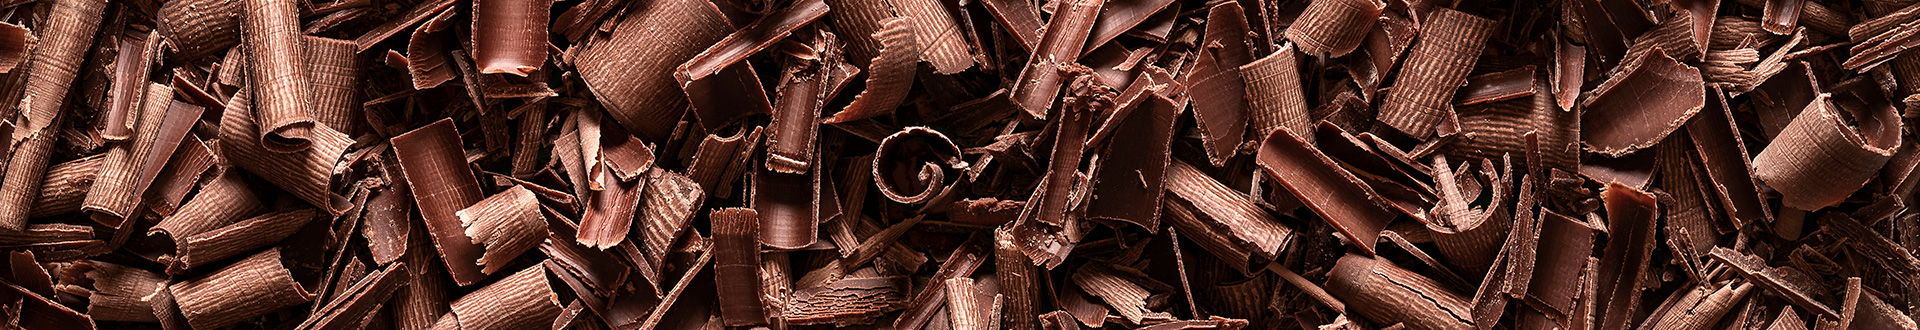 Wiórki czekolady